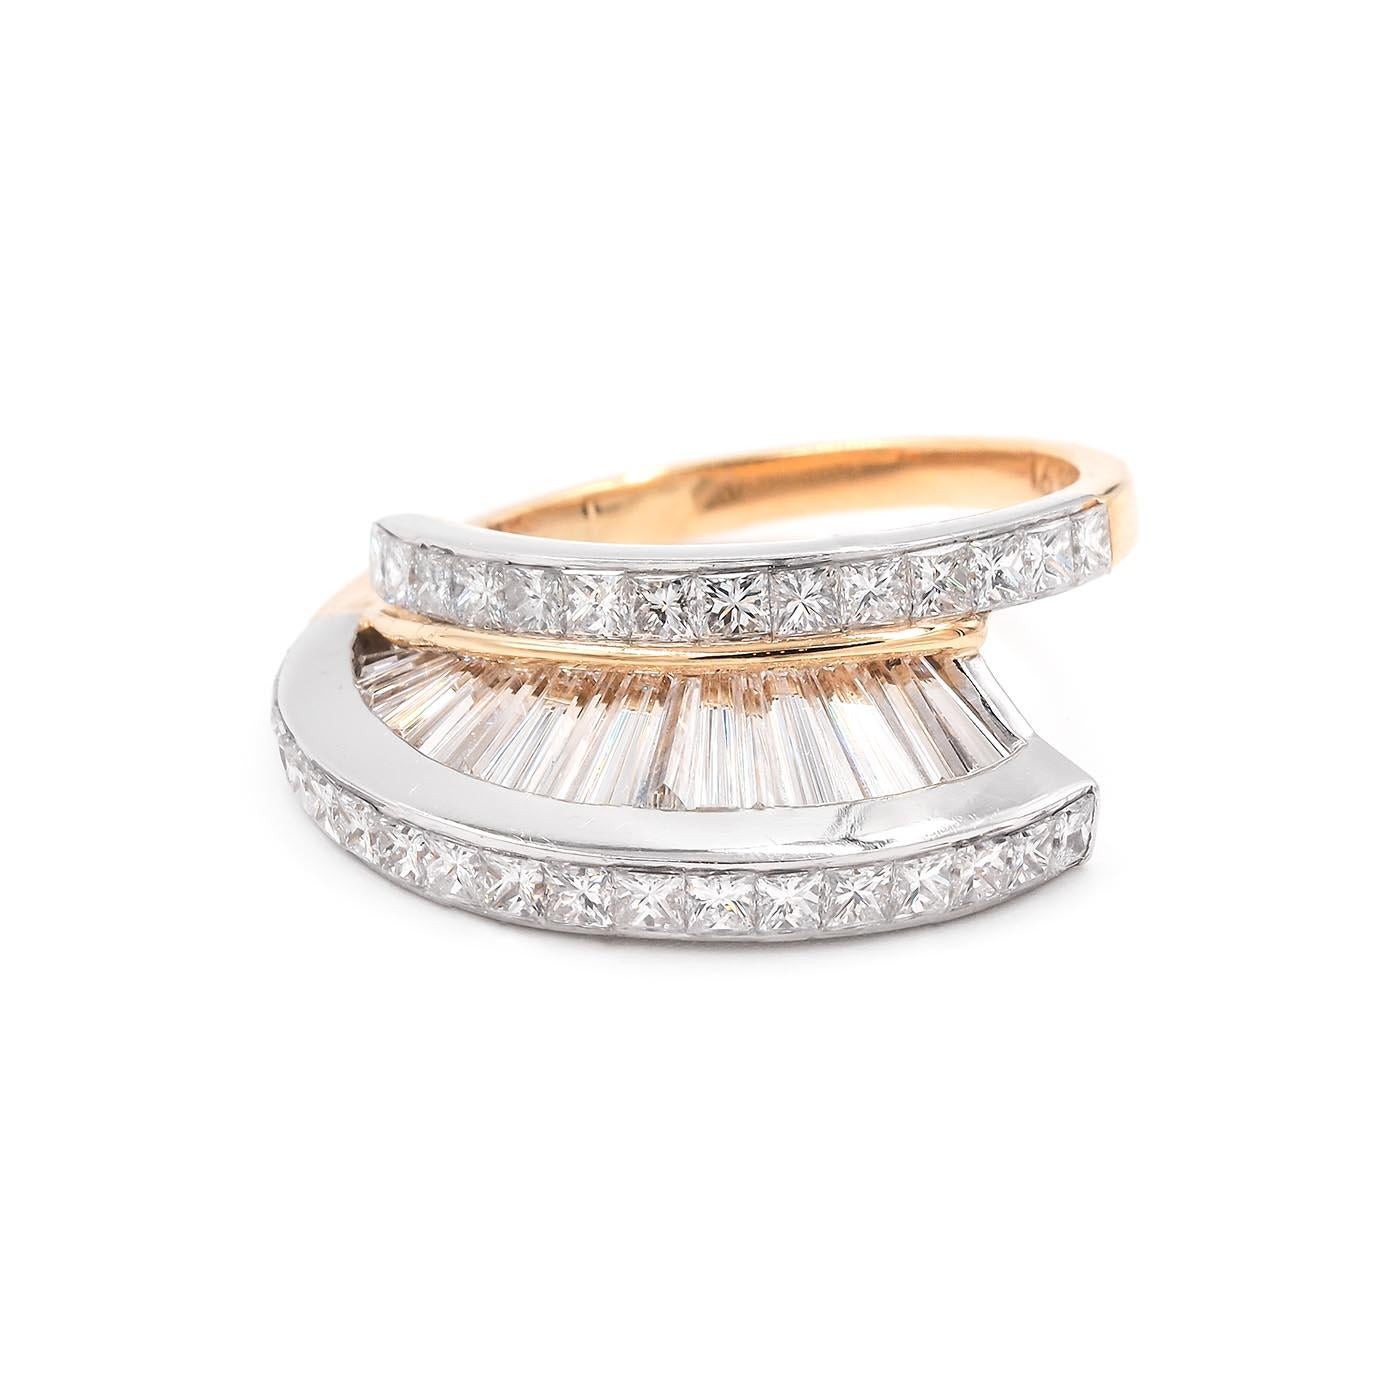 Vintage Baguette Cut & Princess Cut Diamond 'Fan' Ring Set by MWI Eloquence For Sale 1